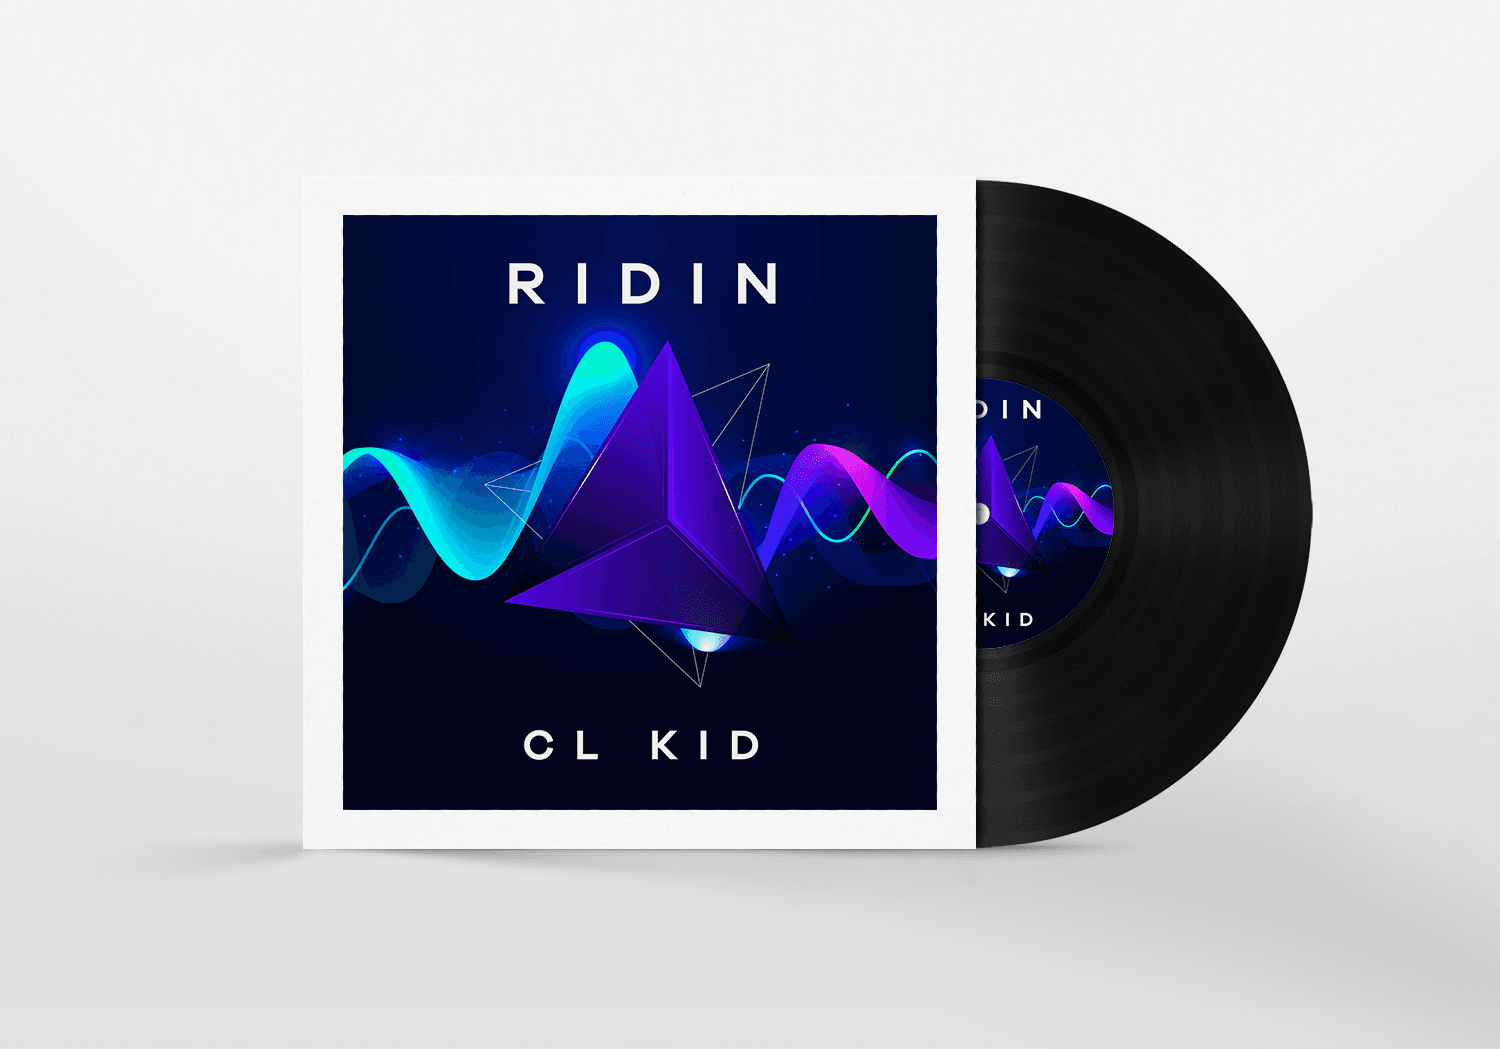 Ridin - CL KID